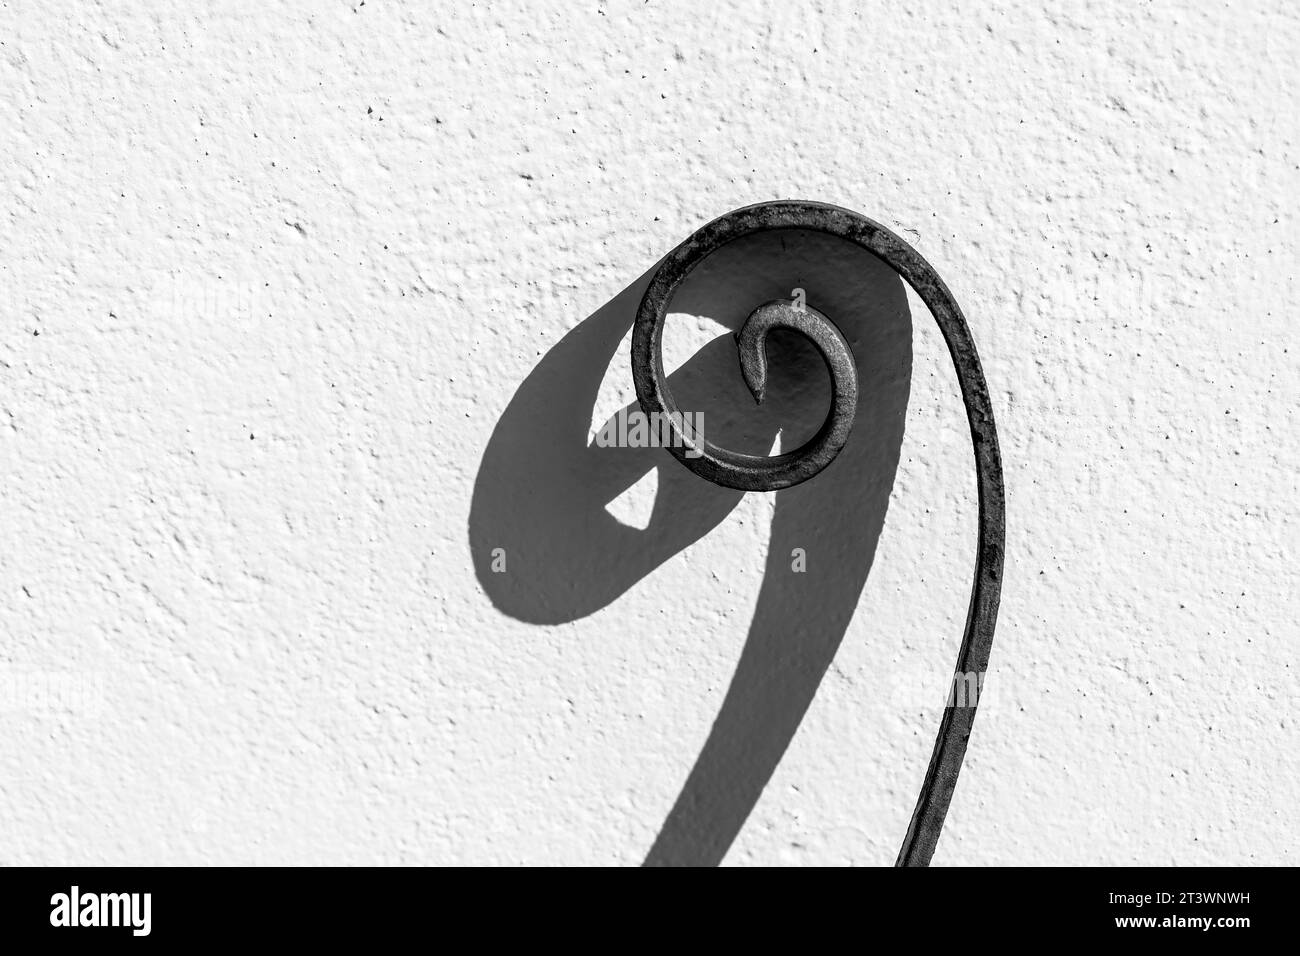 Spirale en fer forgé sur mur blanc. Photo monochrome Banque D'Images